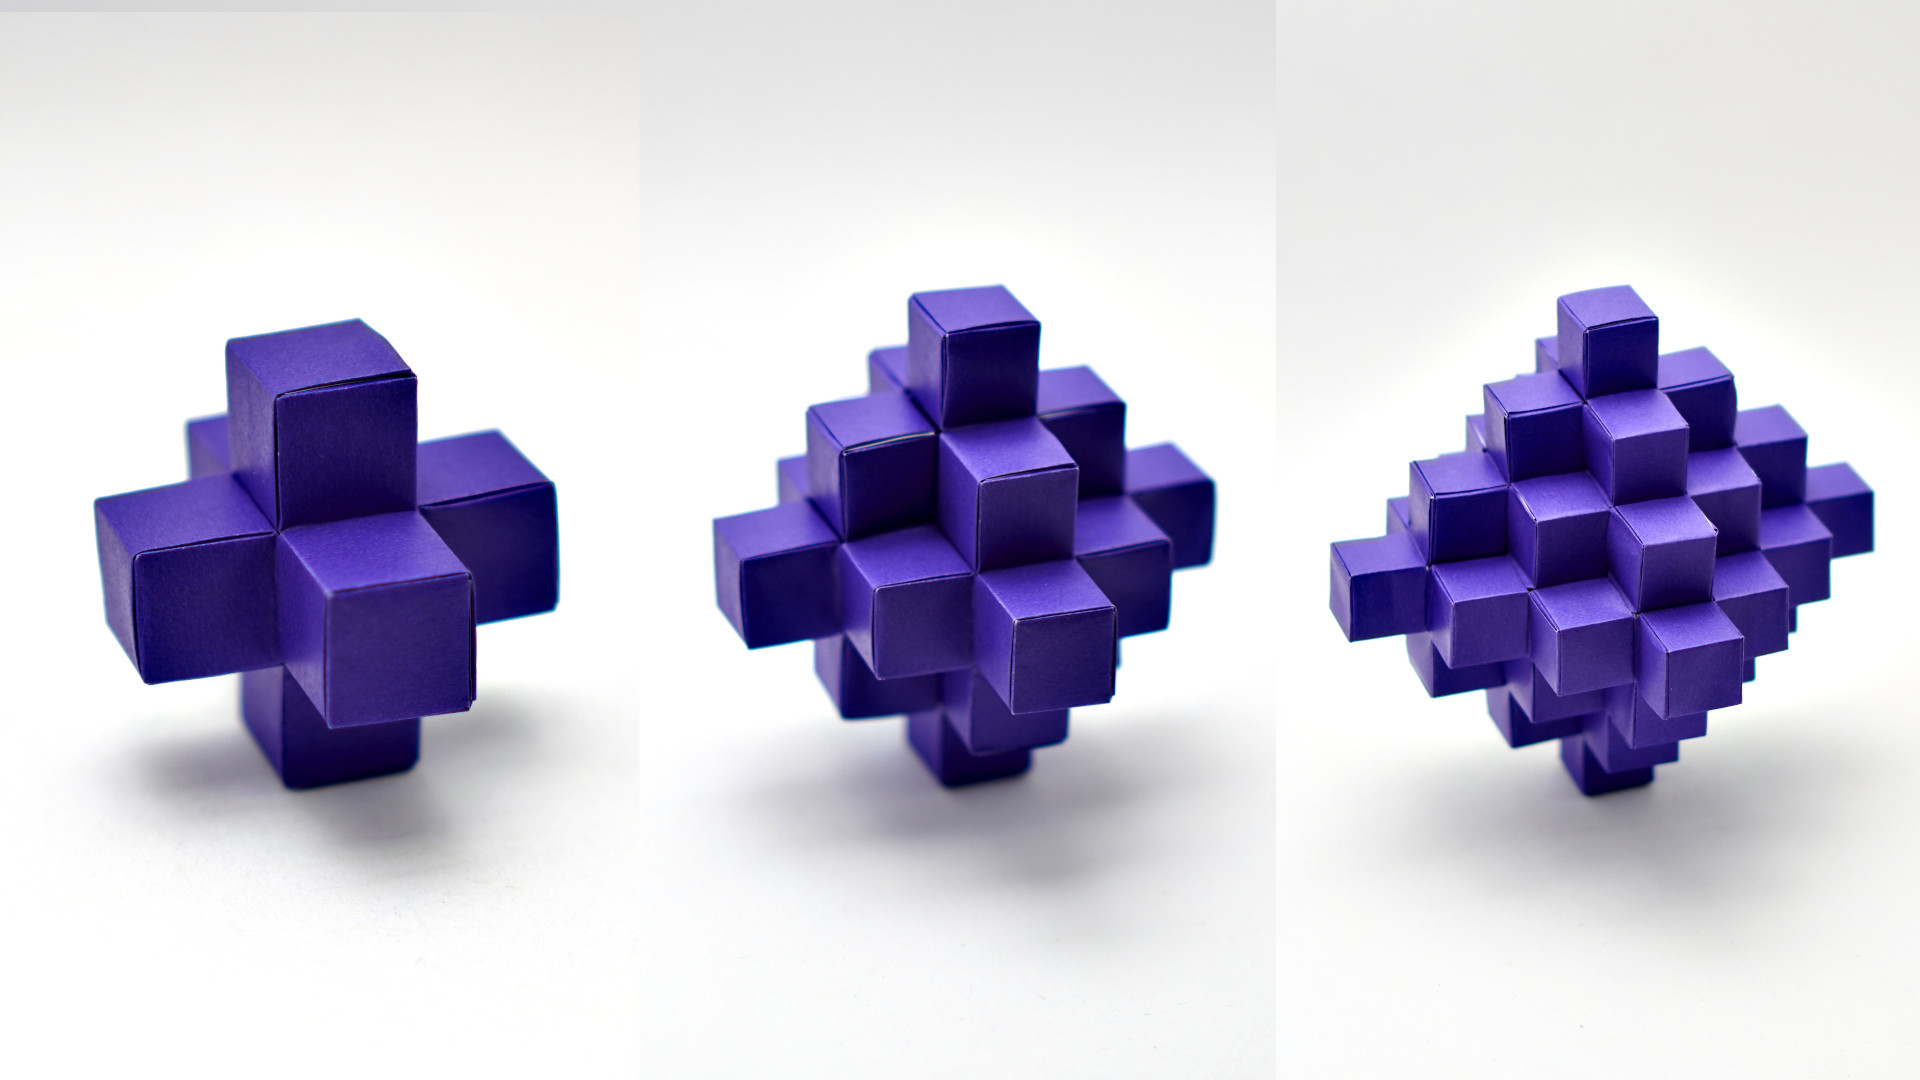 Pixelated Octahedron by Jo Nakashima